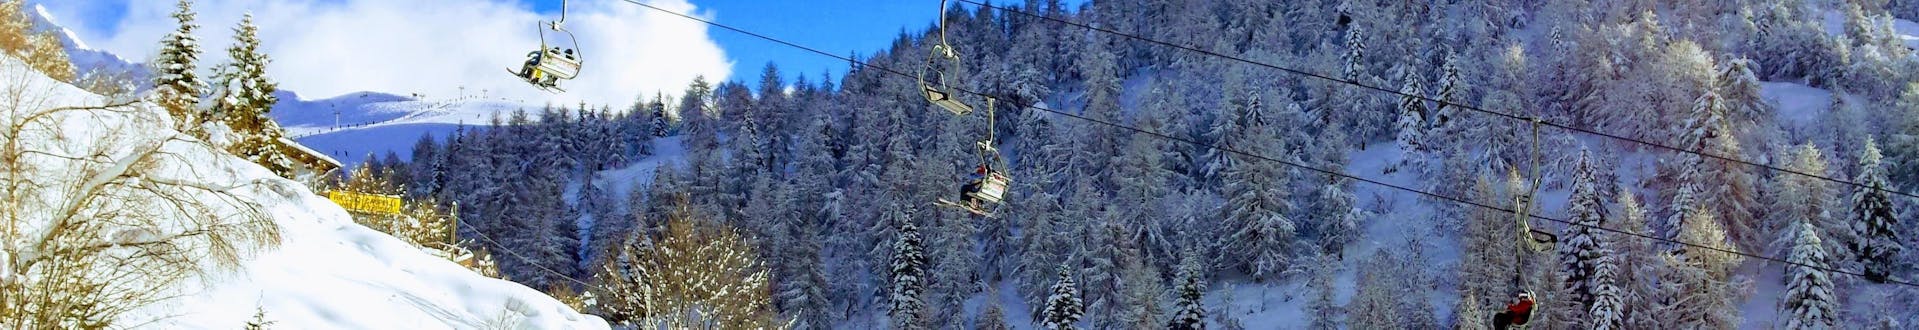 Remonte subiendo por las pistas de la estación de esquí de Piani di Bobbio, Italia.